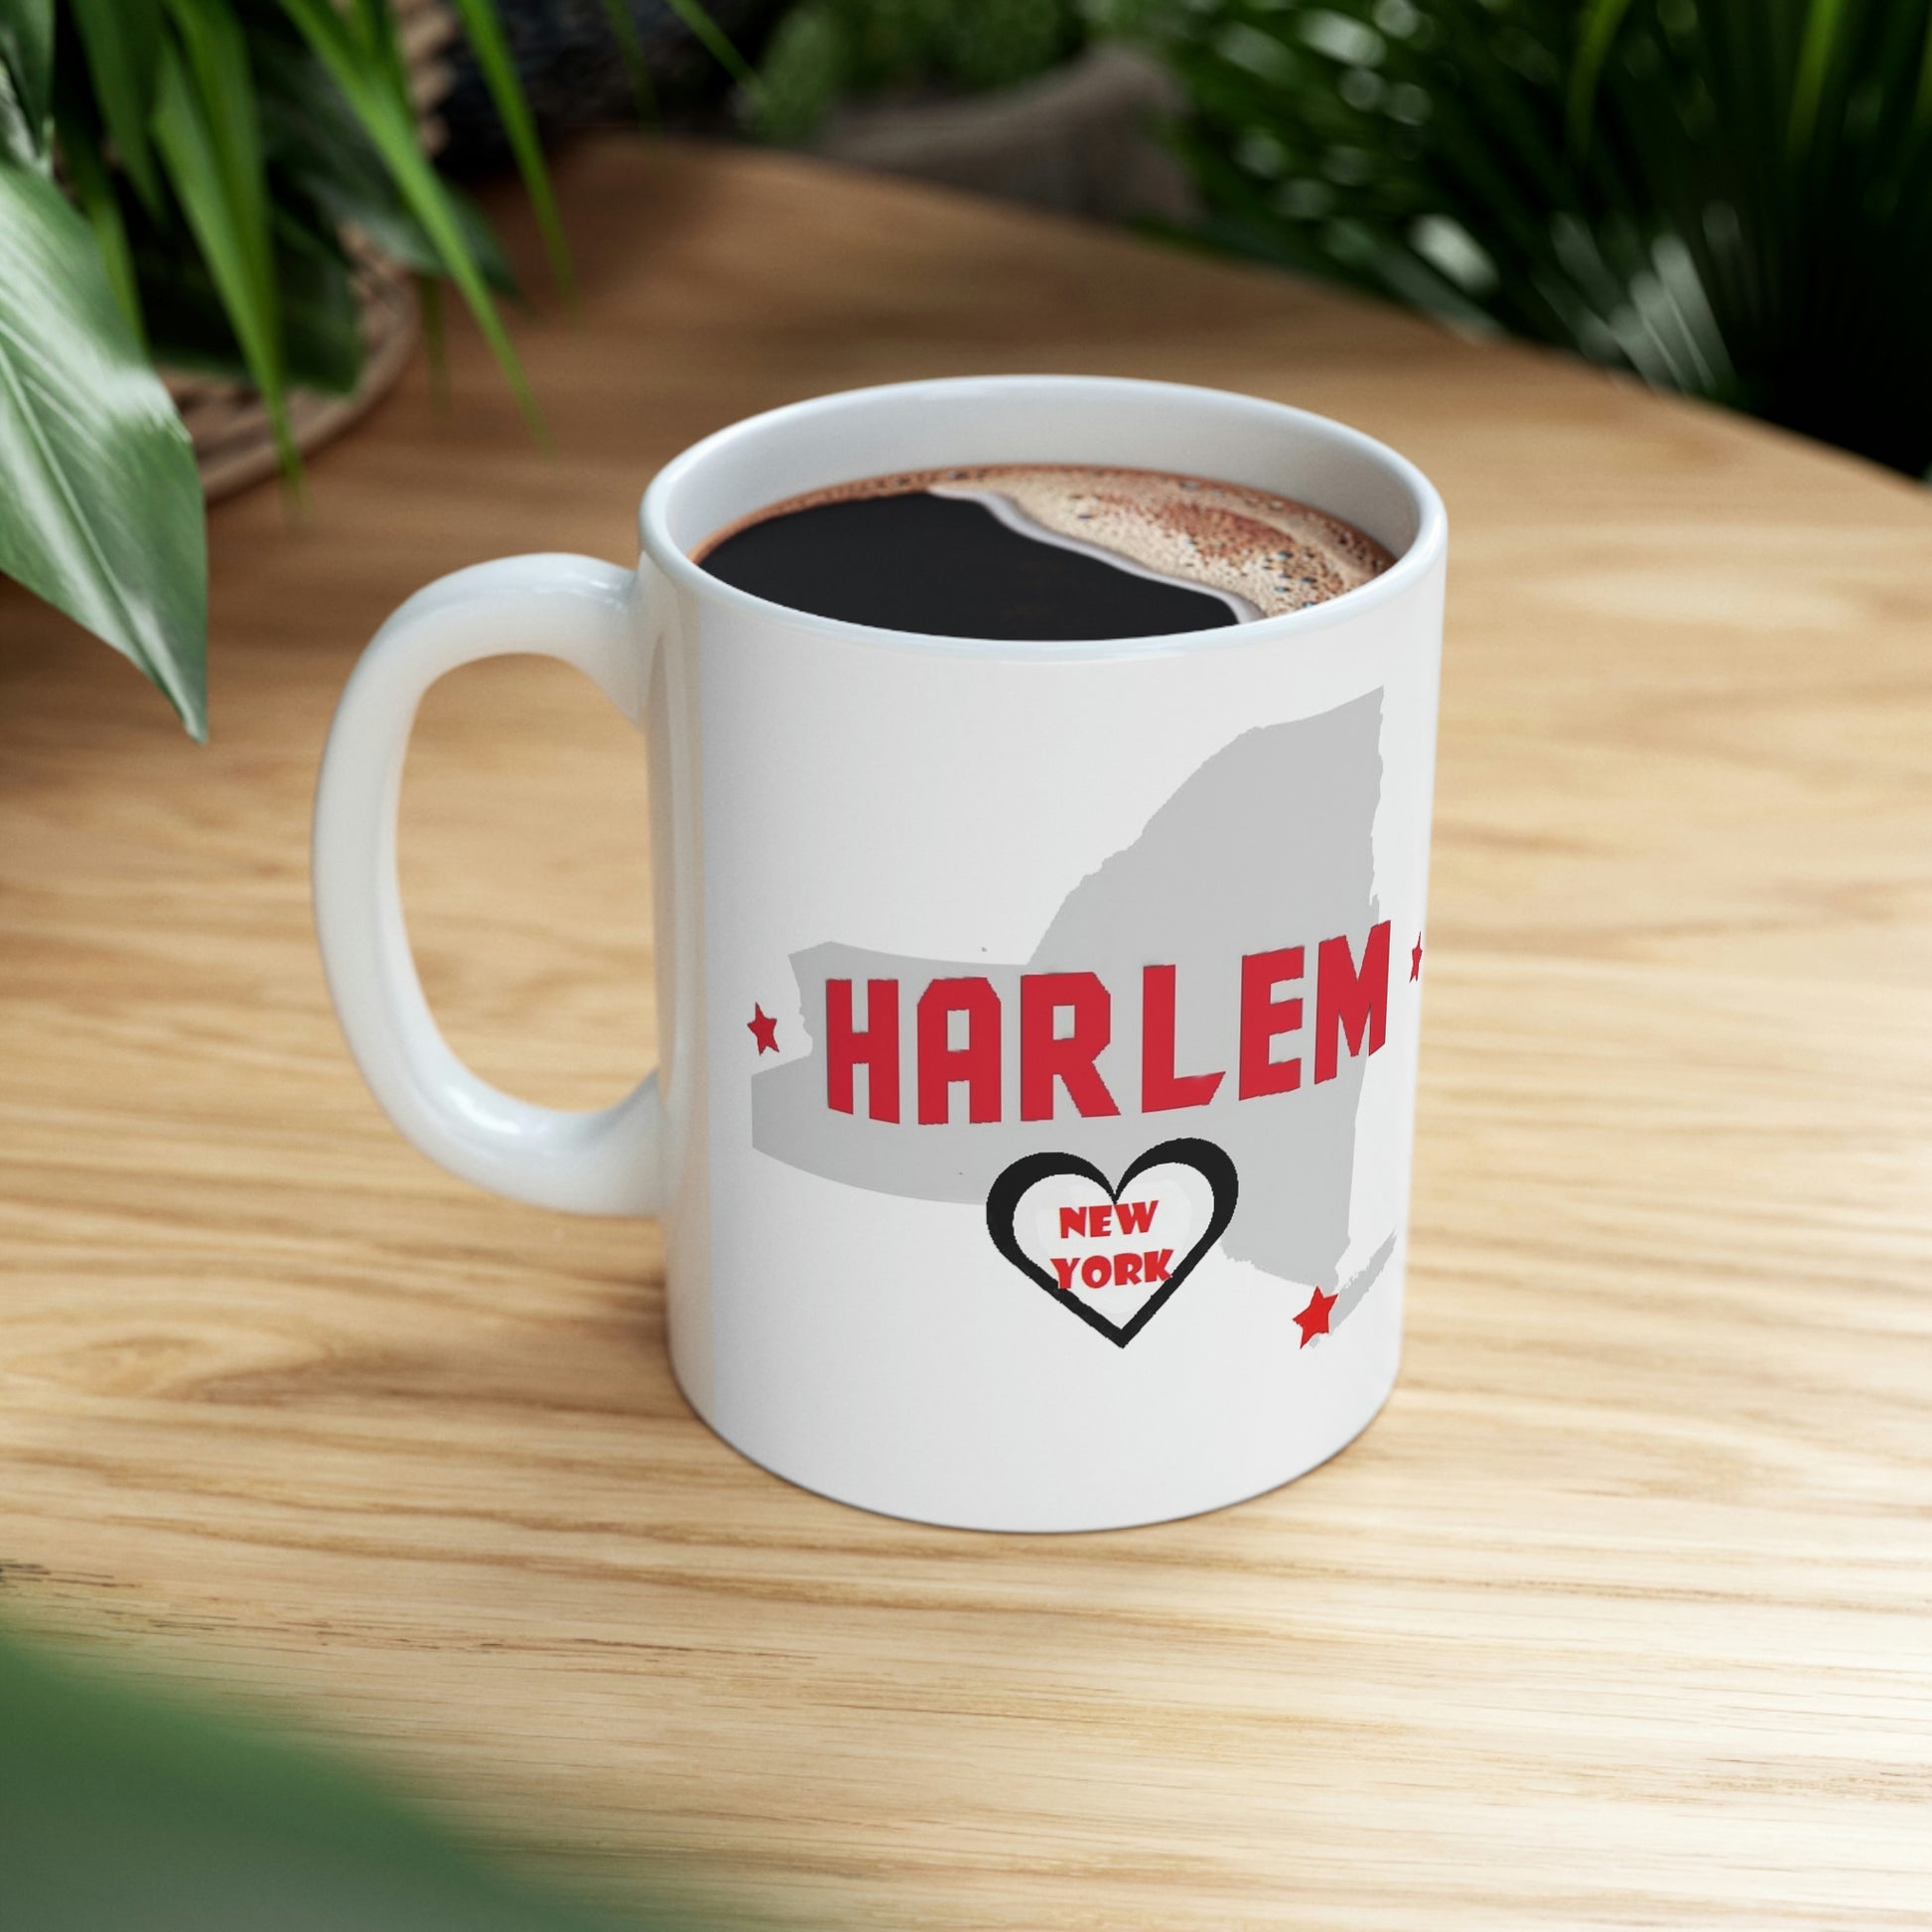 Harlem New York State Map Ceramic Mug on Table